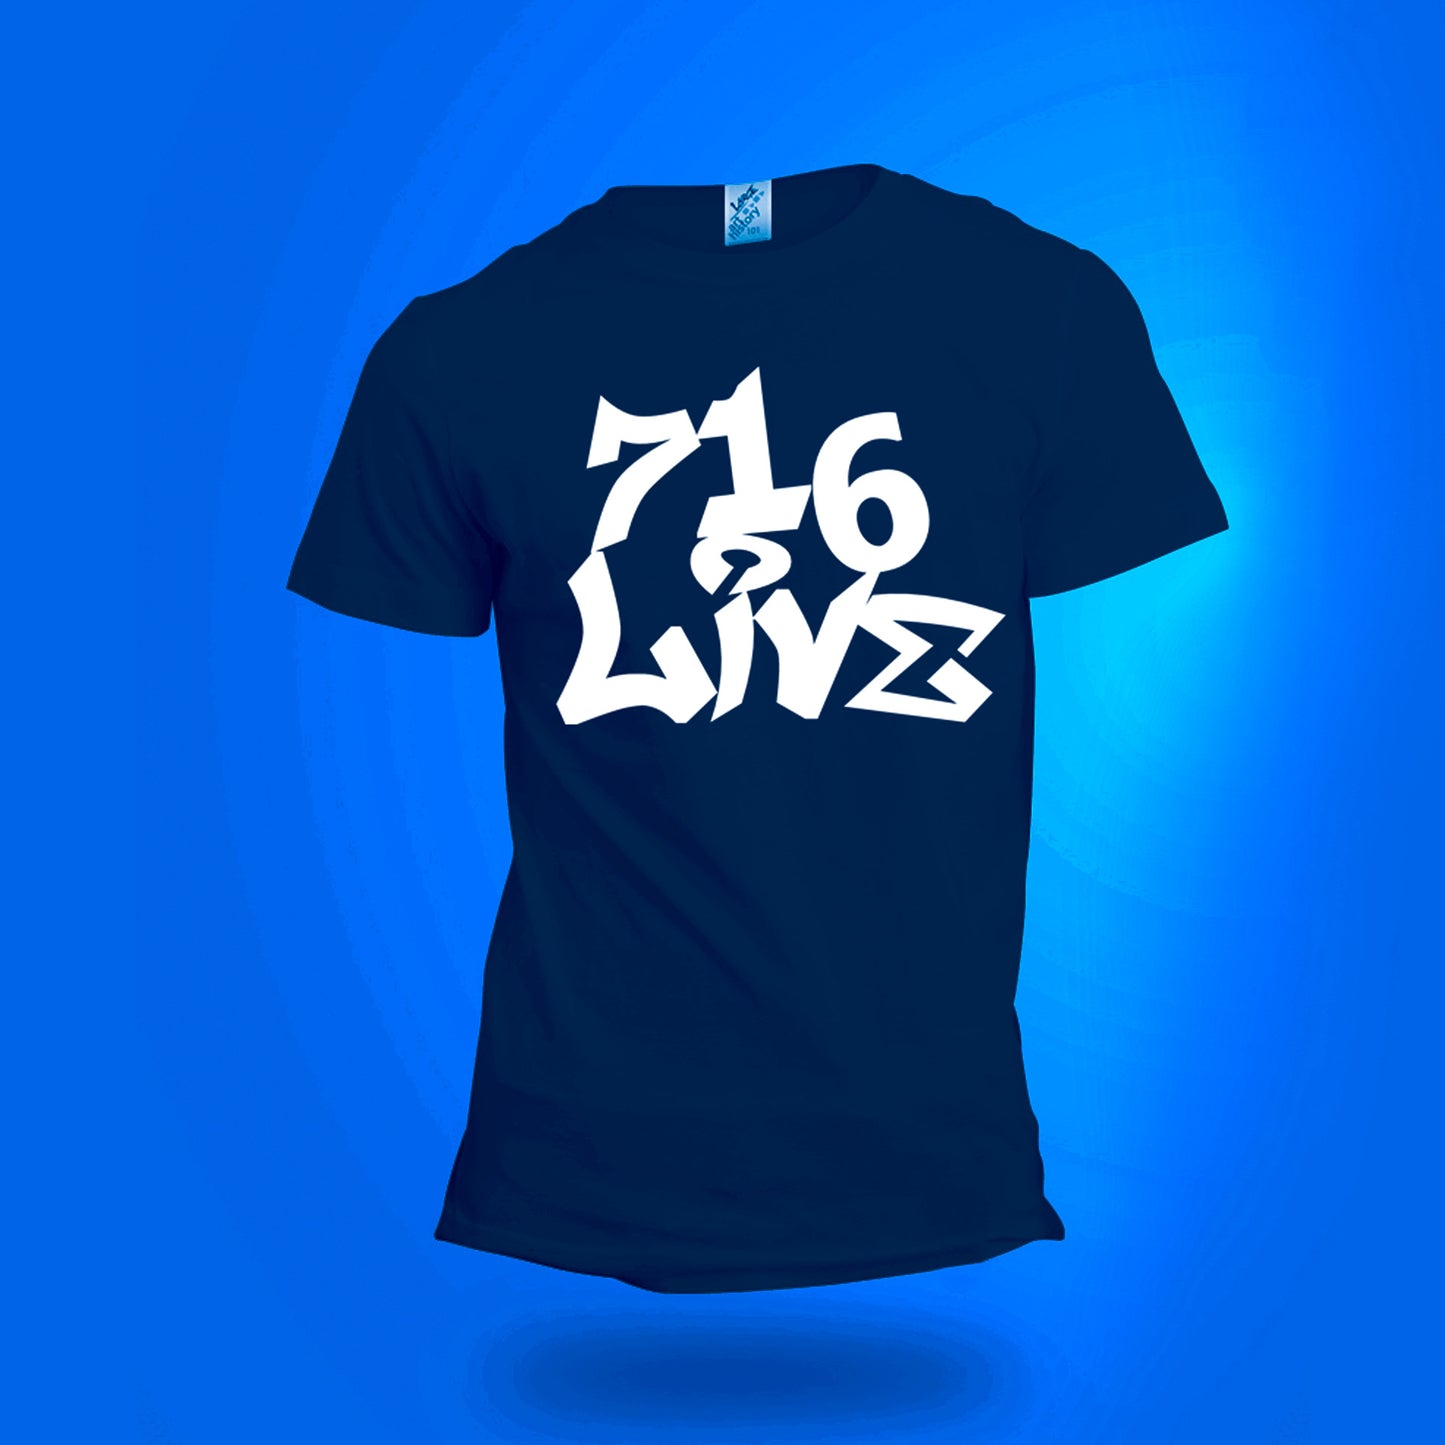 716 Live T-Shirt Basic